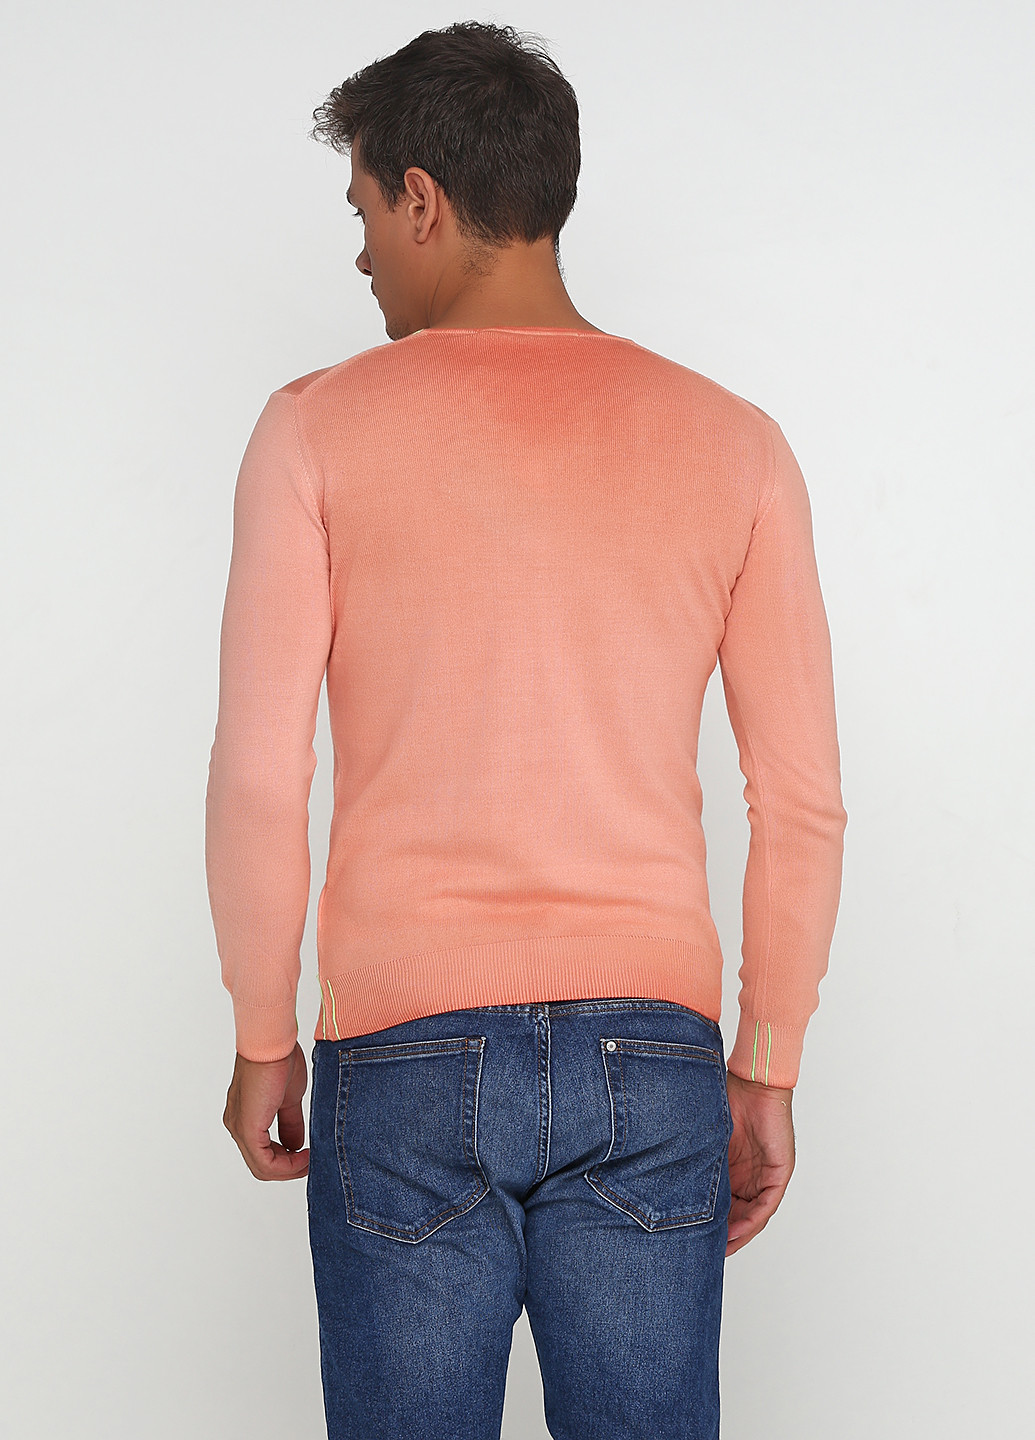 Персиковый демисезонный пуловер пуловер Daggs